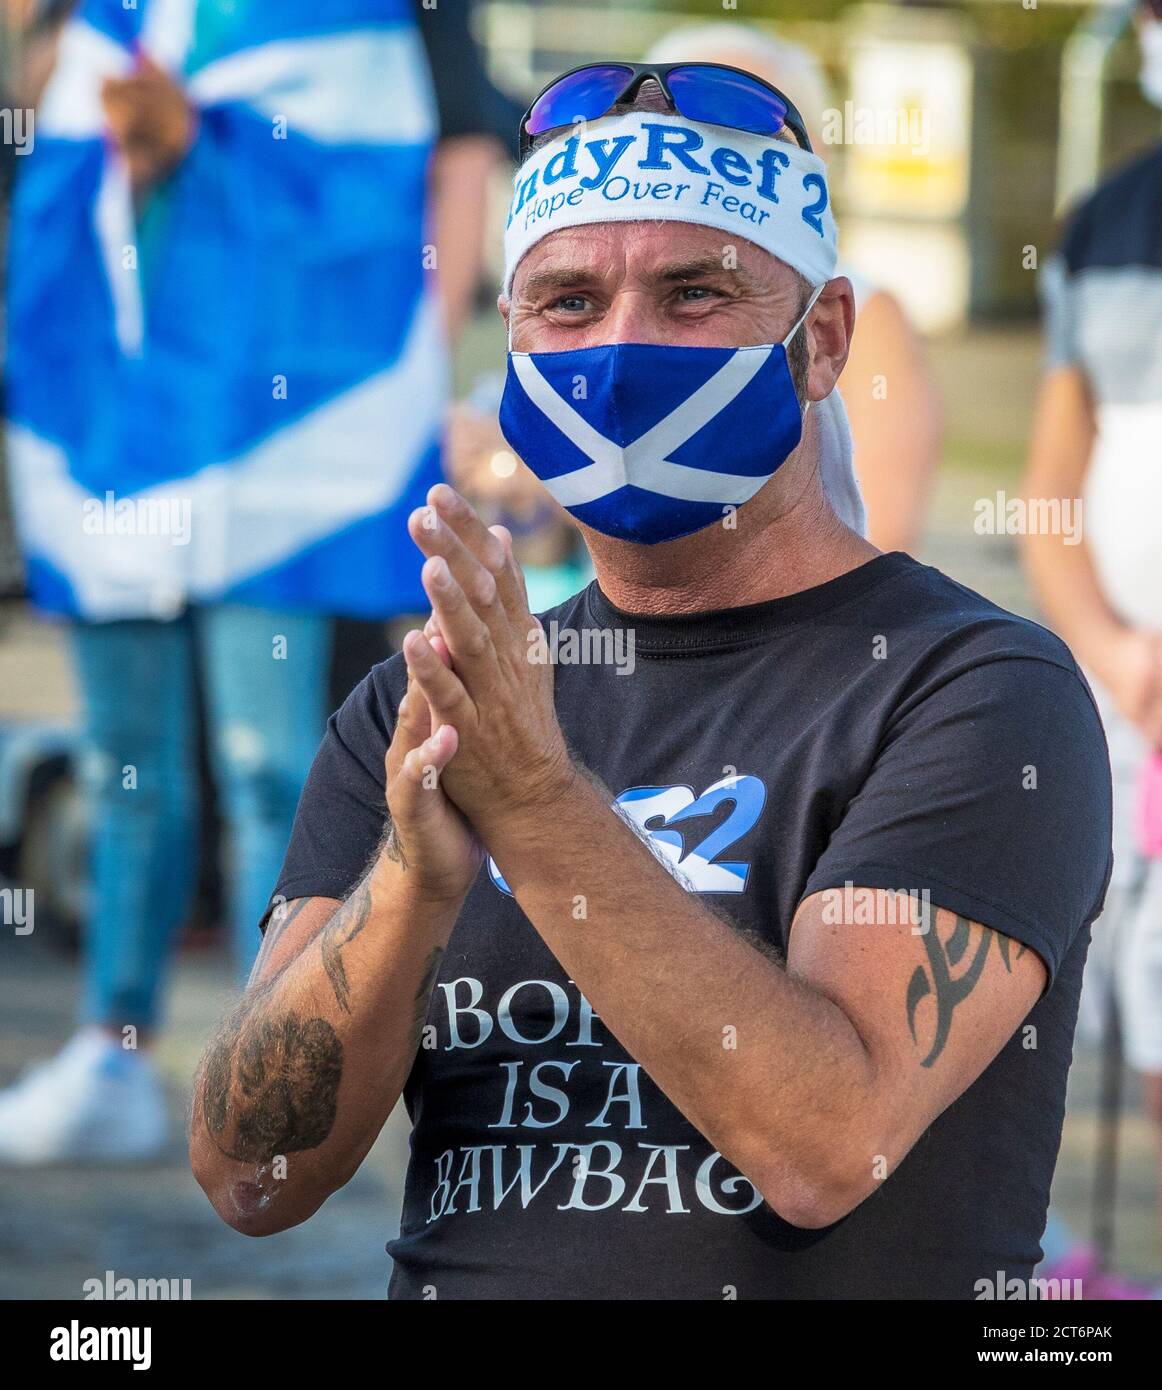 Scottish Independence sostenitore che indossa una maschera di salvataggio a e. IndyRef 2 bandana che sostiene il gruppo politico "Hope over Fear" Foto Stock